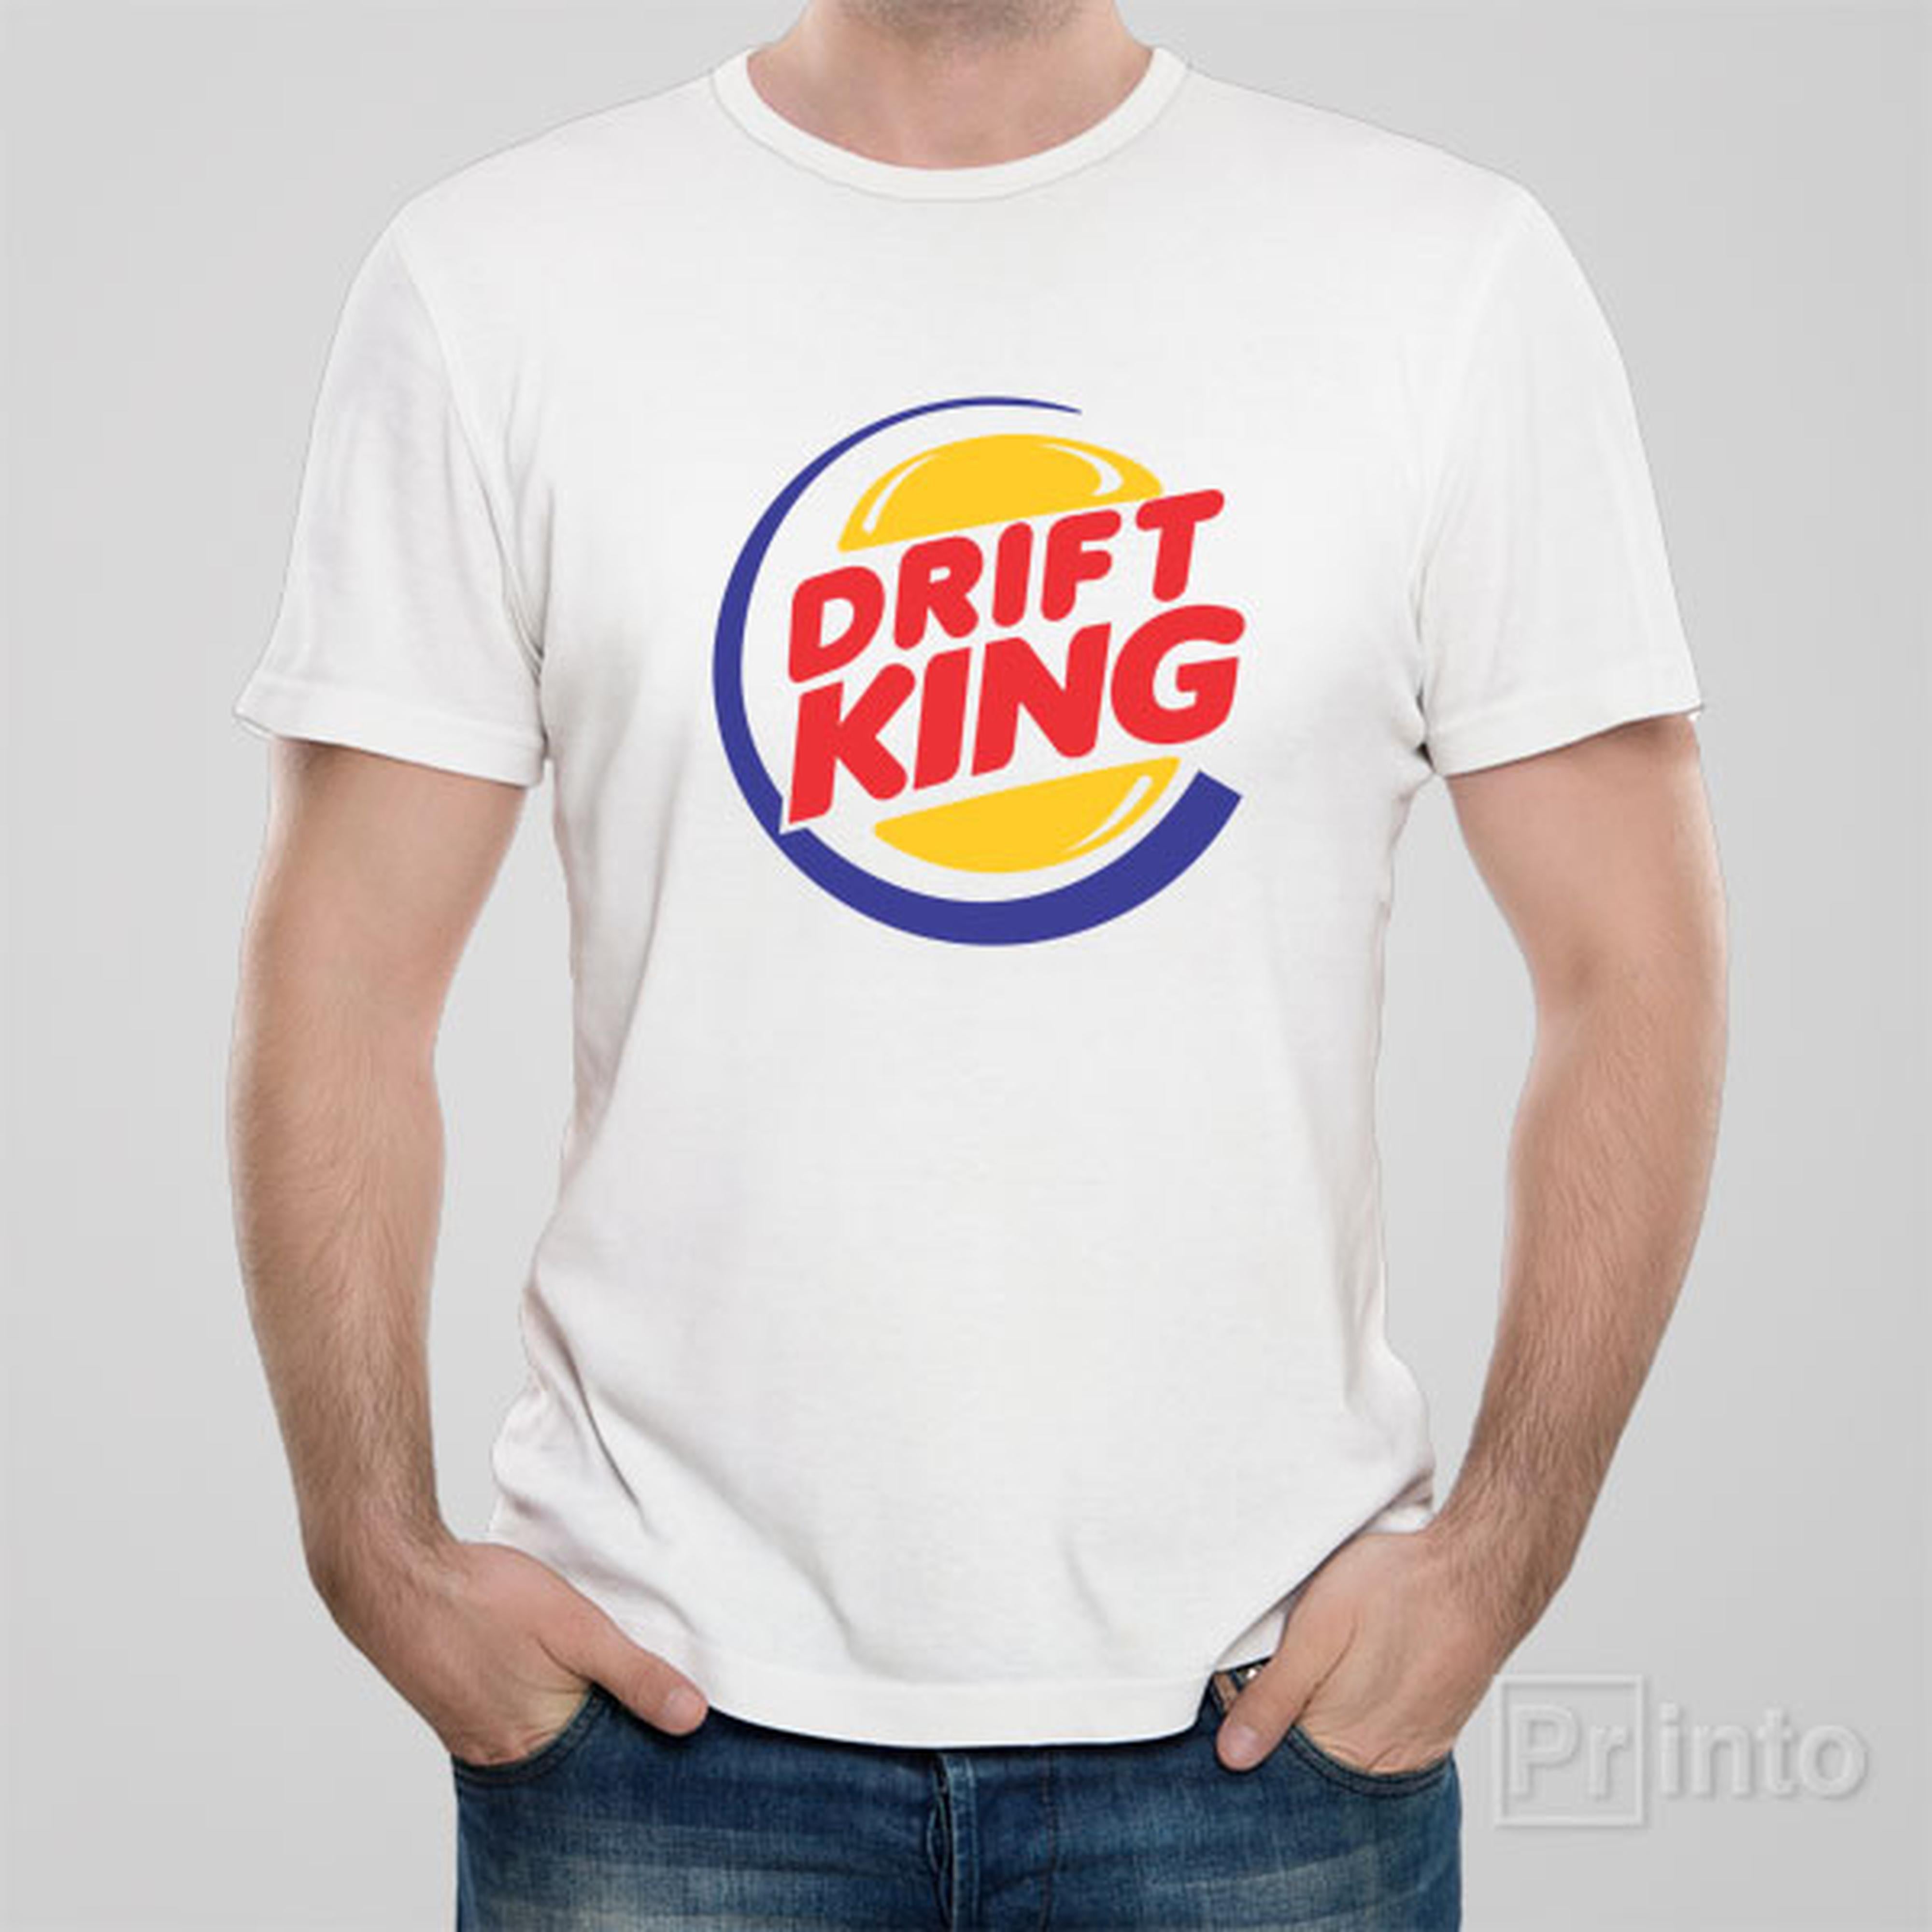 drift-king-t-shirt